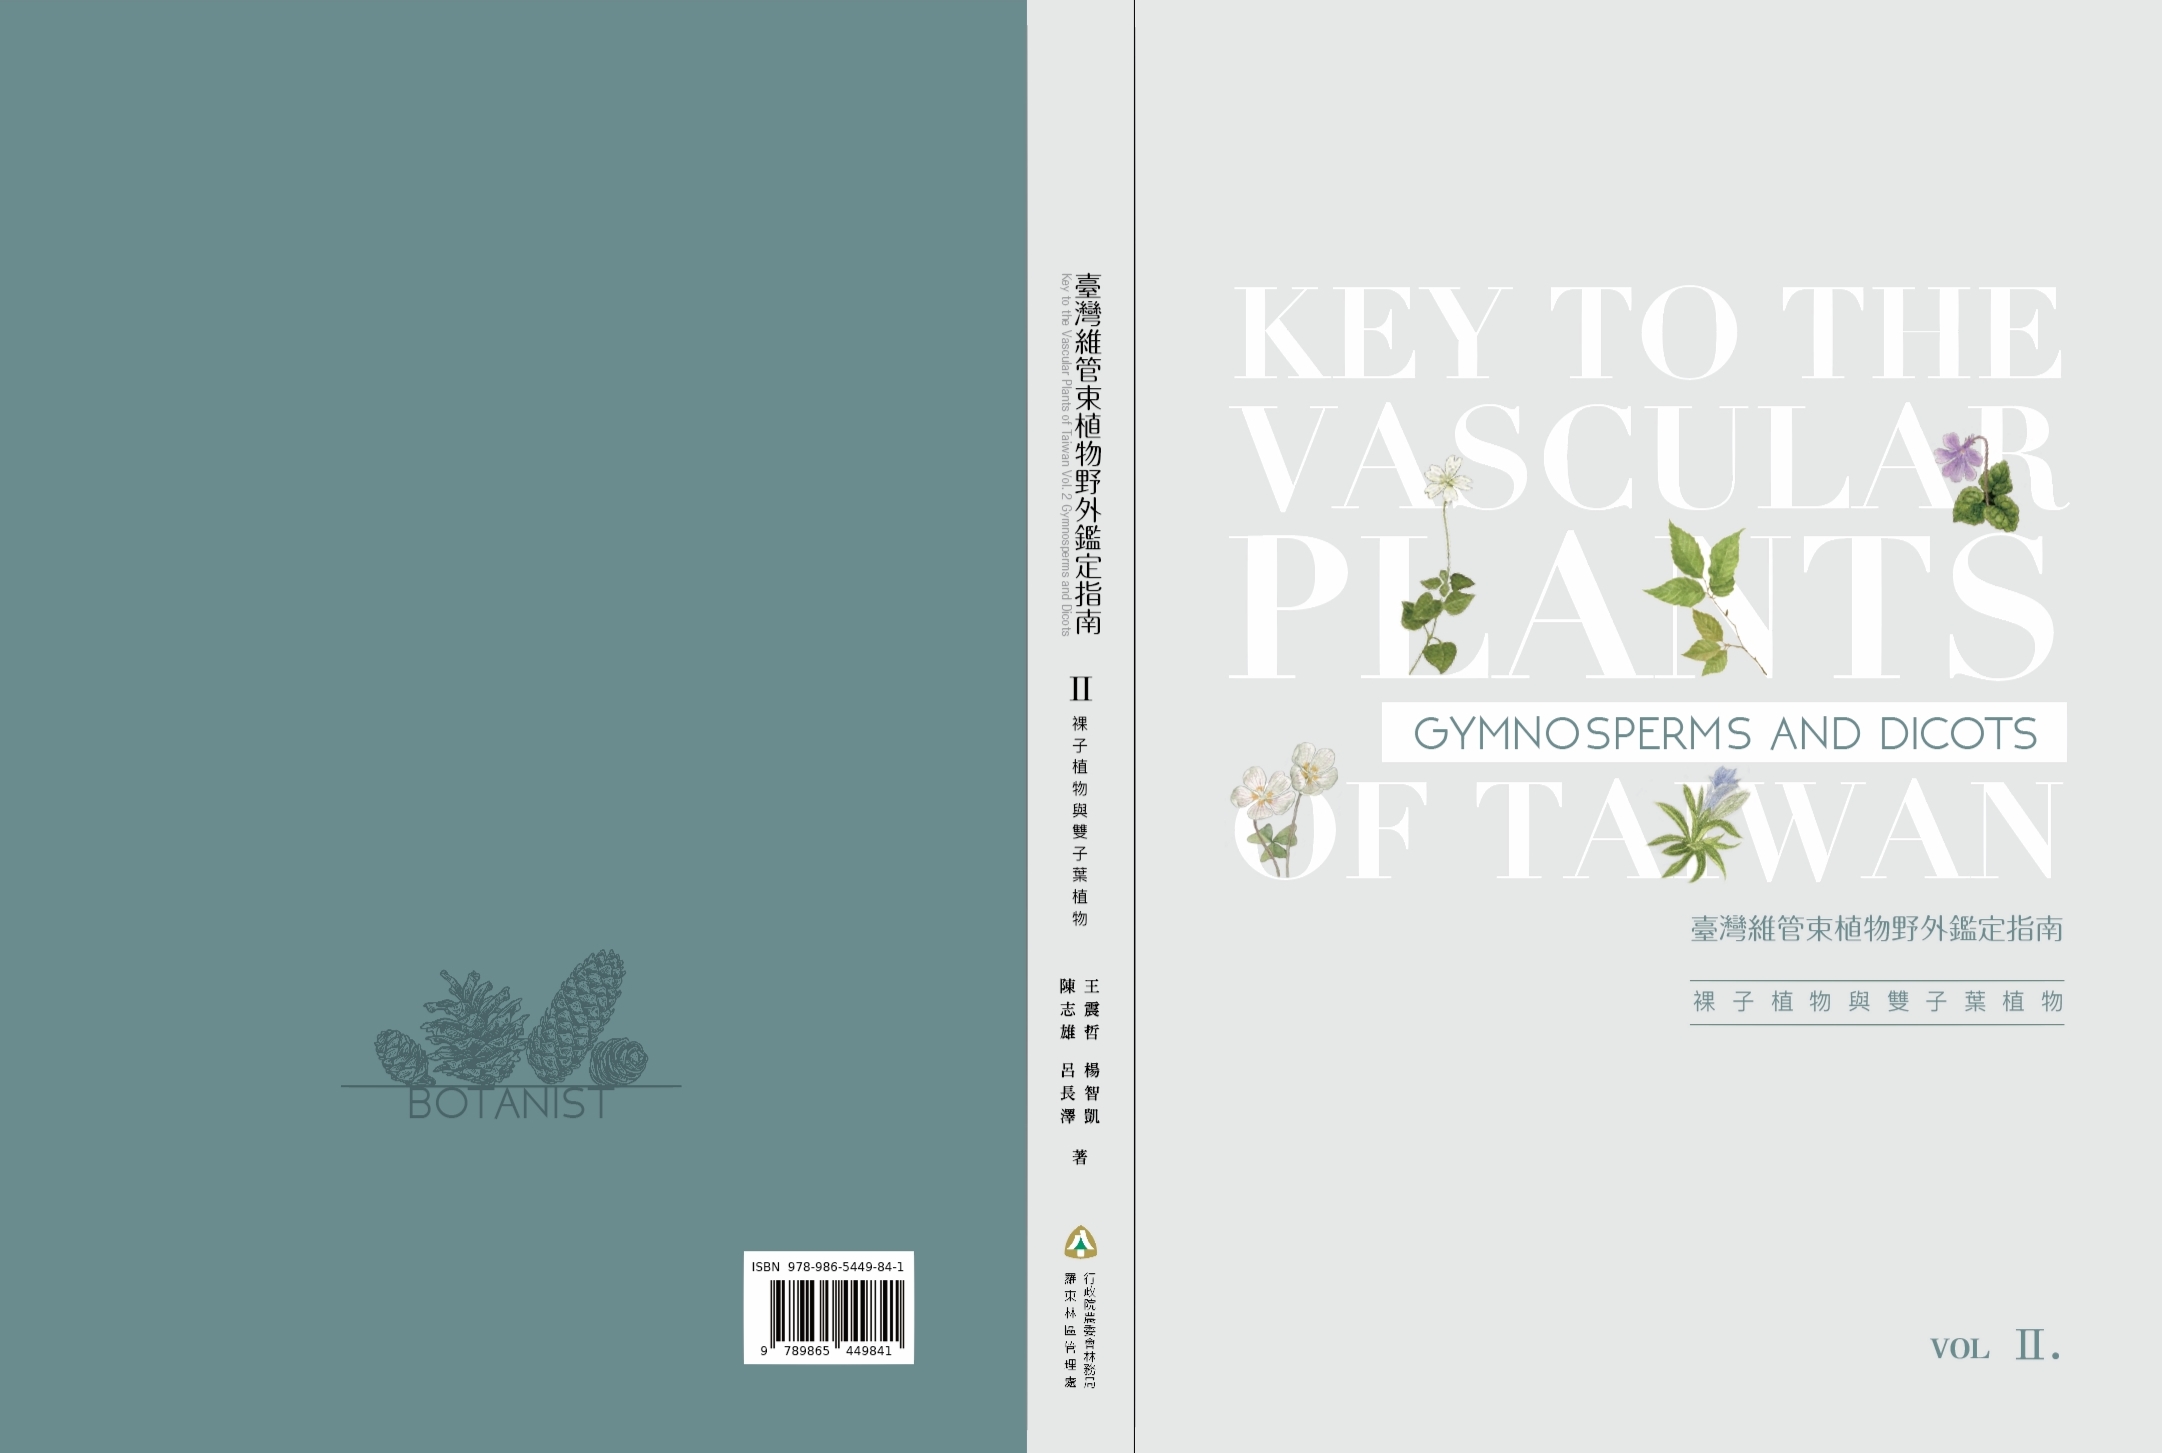 書籍：《臺灣維管束植物野外鑑定指南》VOL.2 (下冊)裸子植物與雙子葉植物